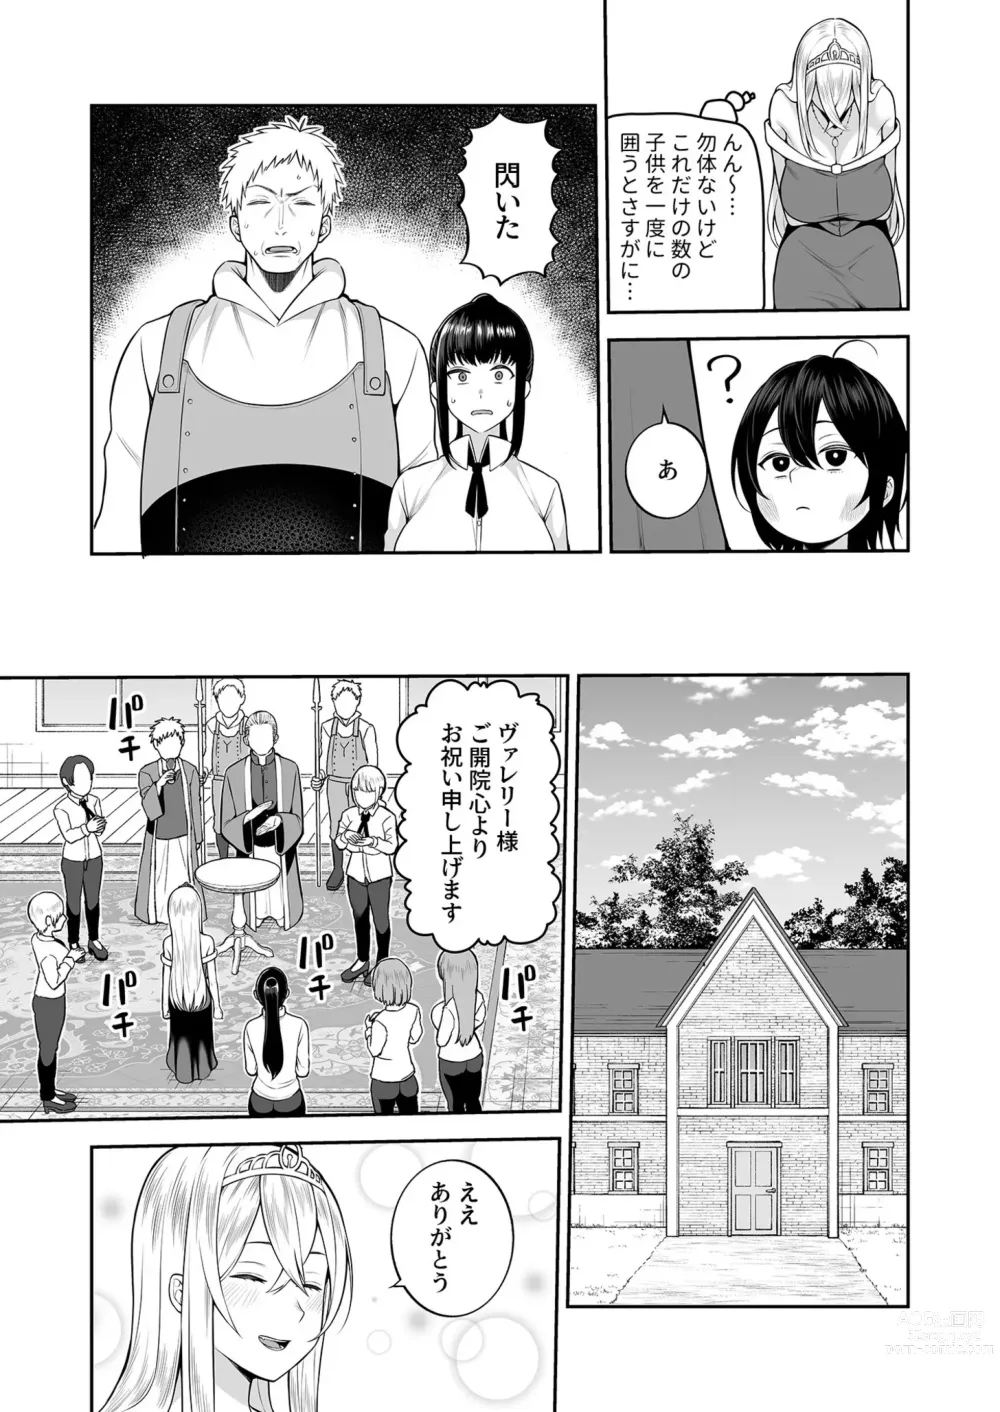 Page 6 of manga Valerie Monogatari 3 〜Suki nishi te ii no yo〜